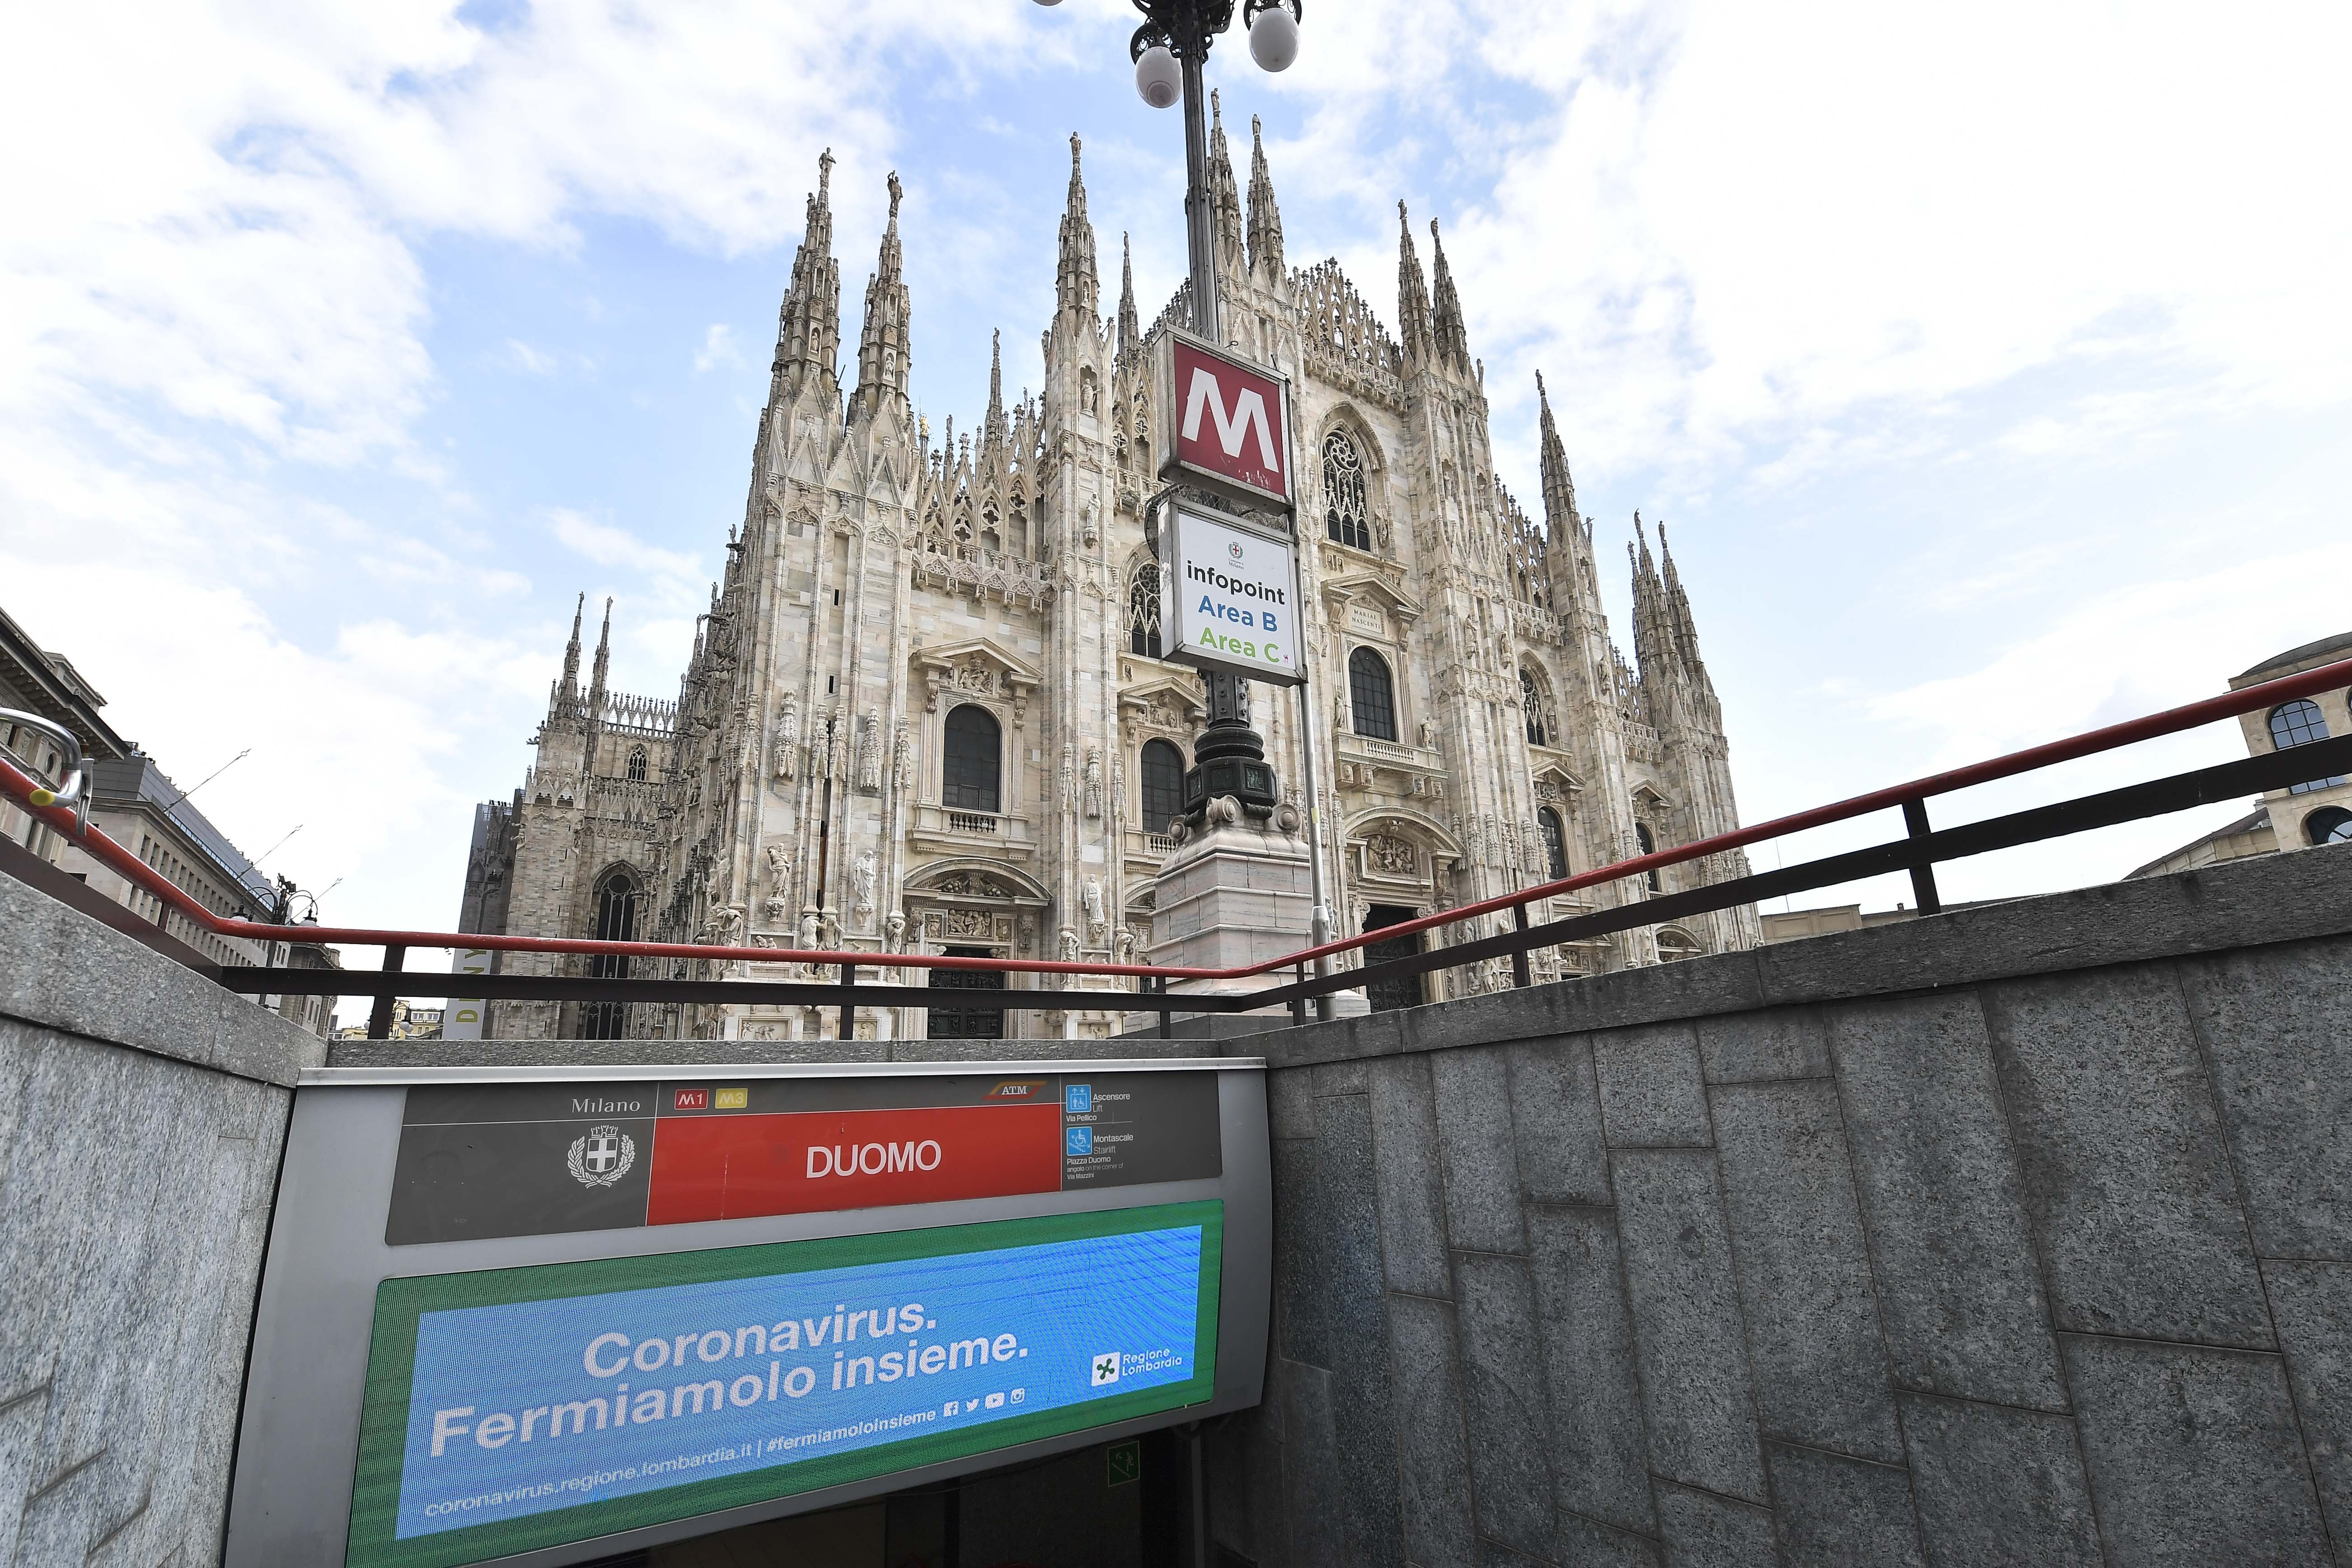  Região da Lombardia foi a mais afetada pelo surto na Itália (Foto: Getty Images)